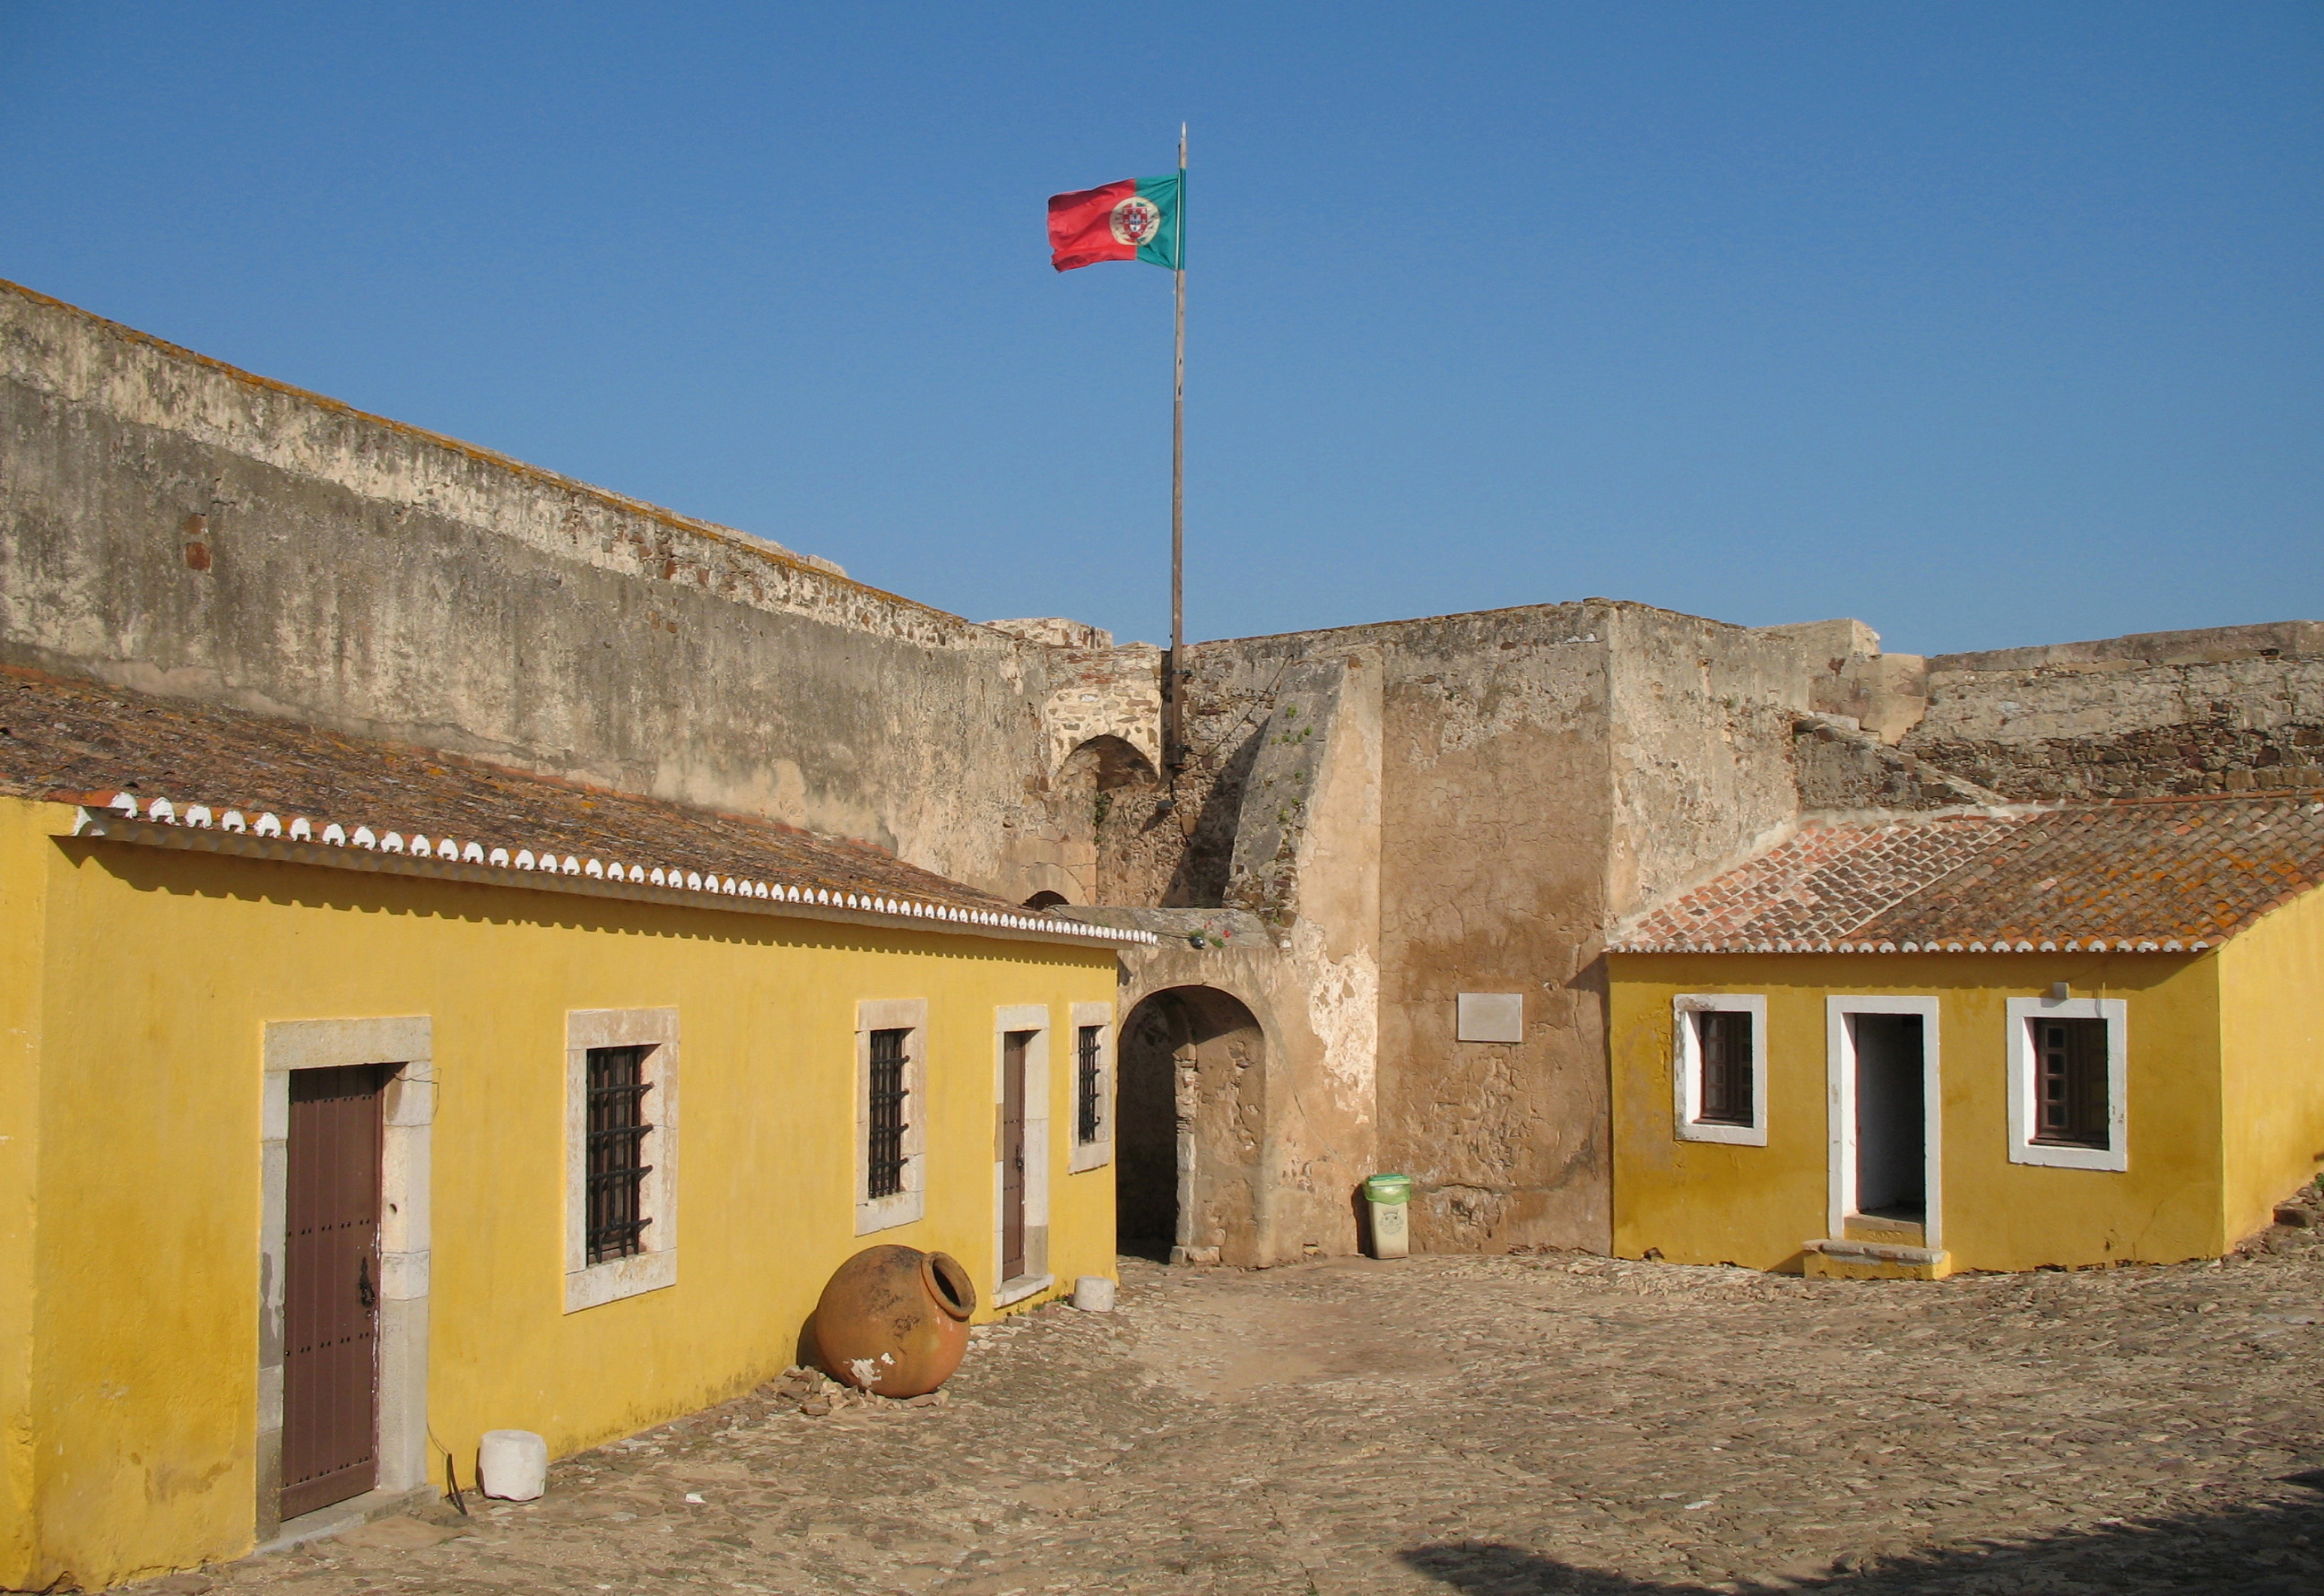 Nucleo Museologico do Castelo de Castro Marim